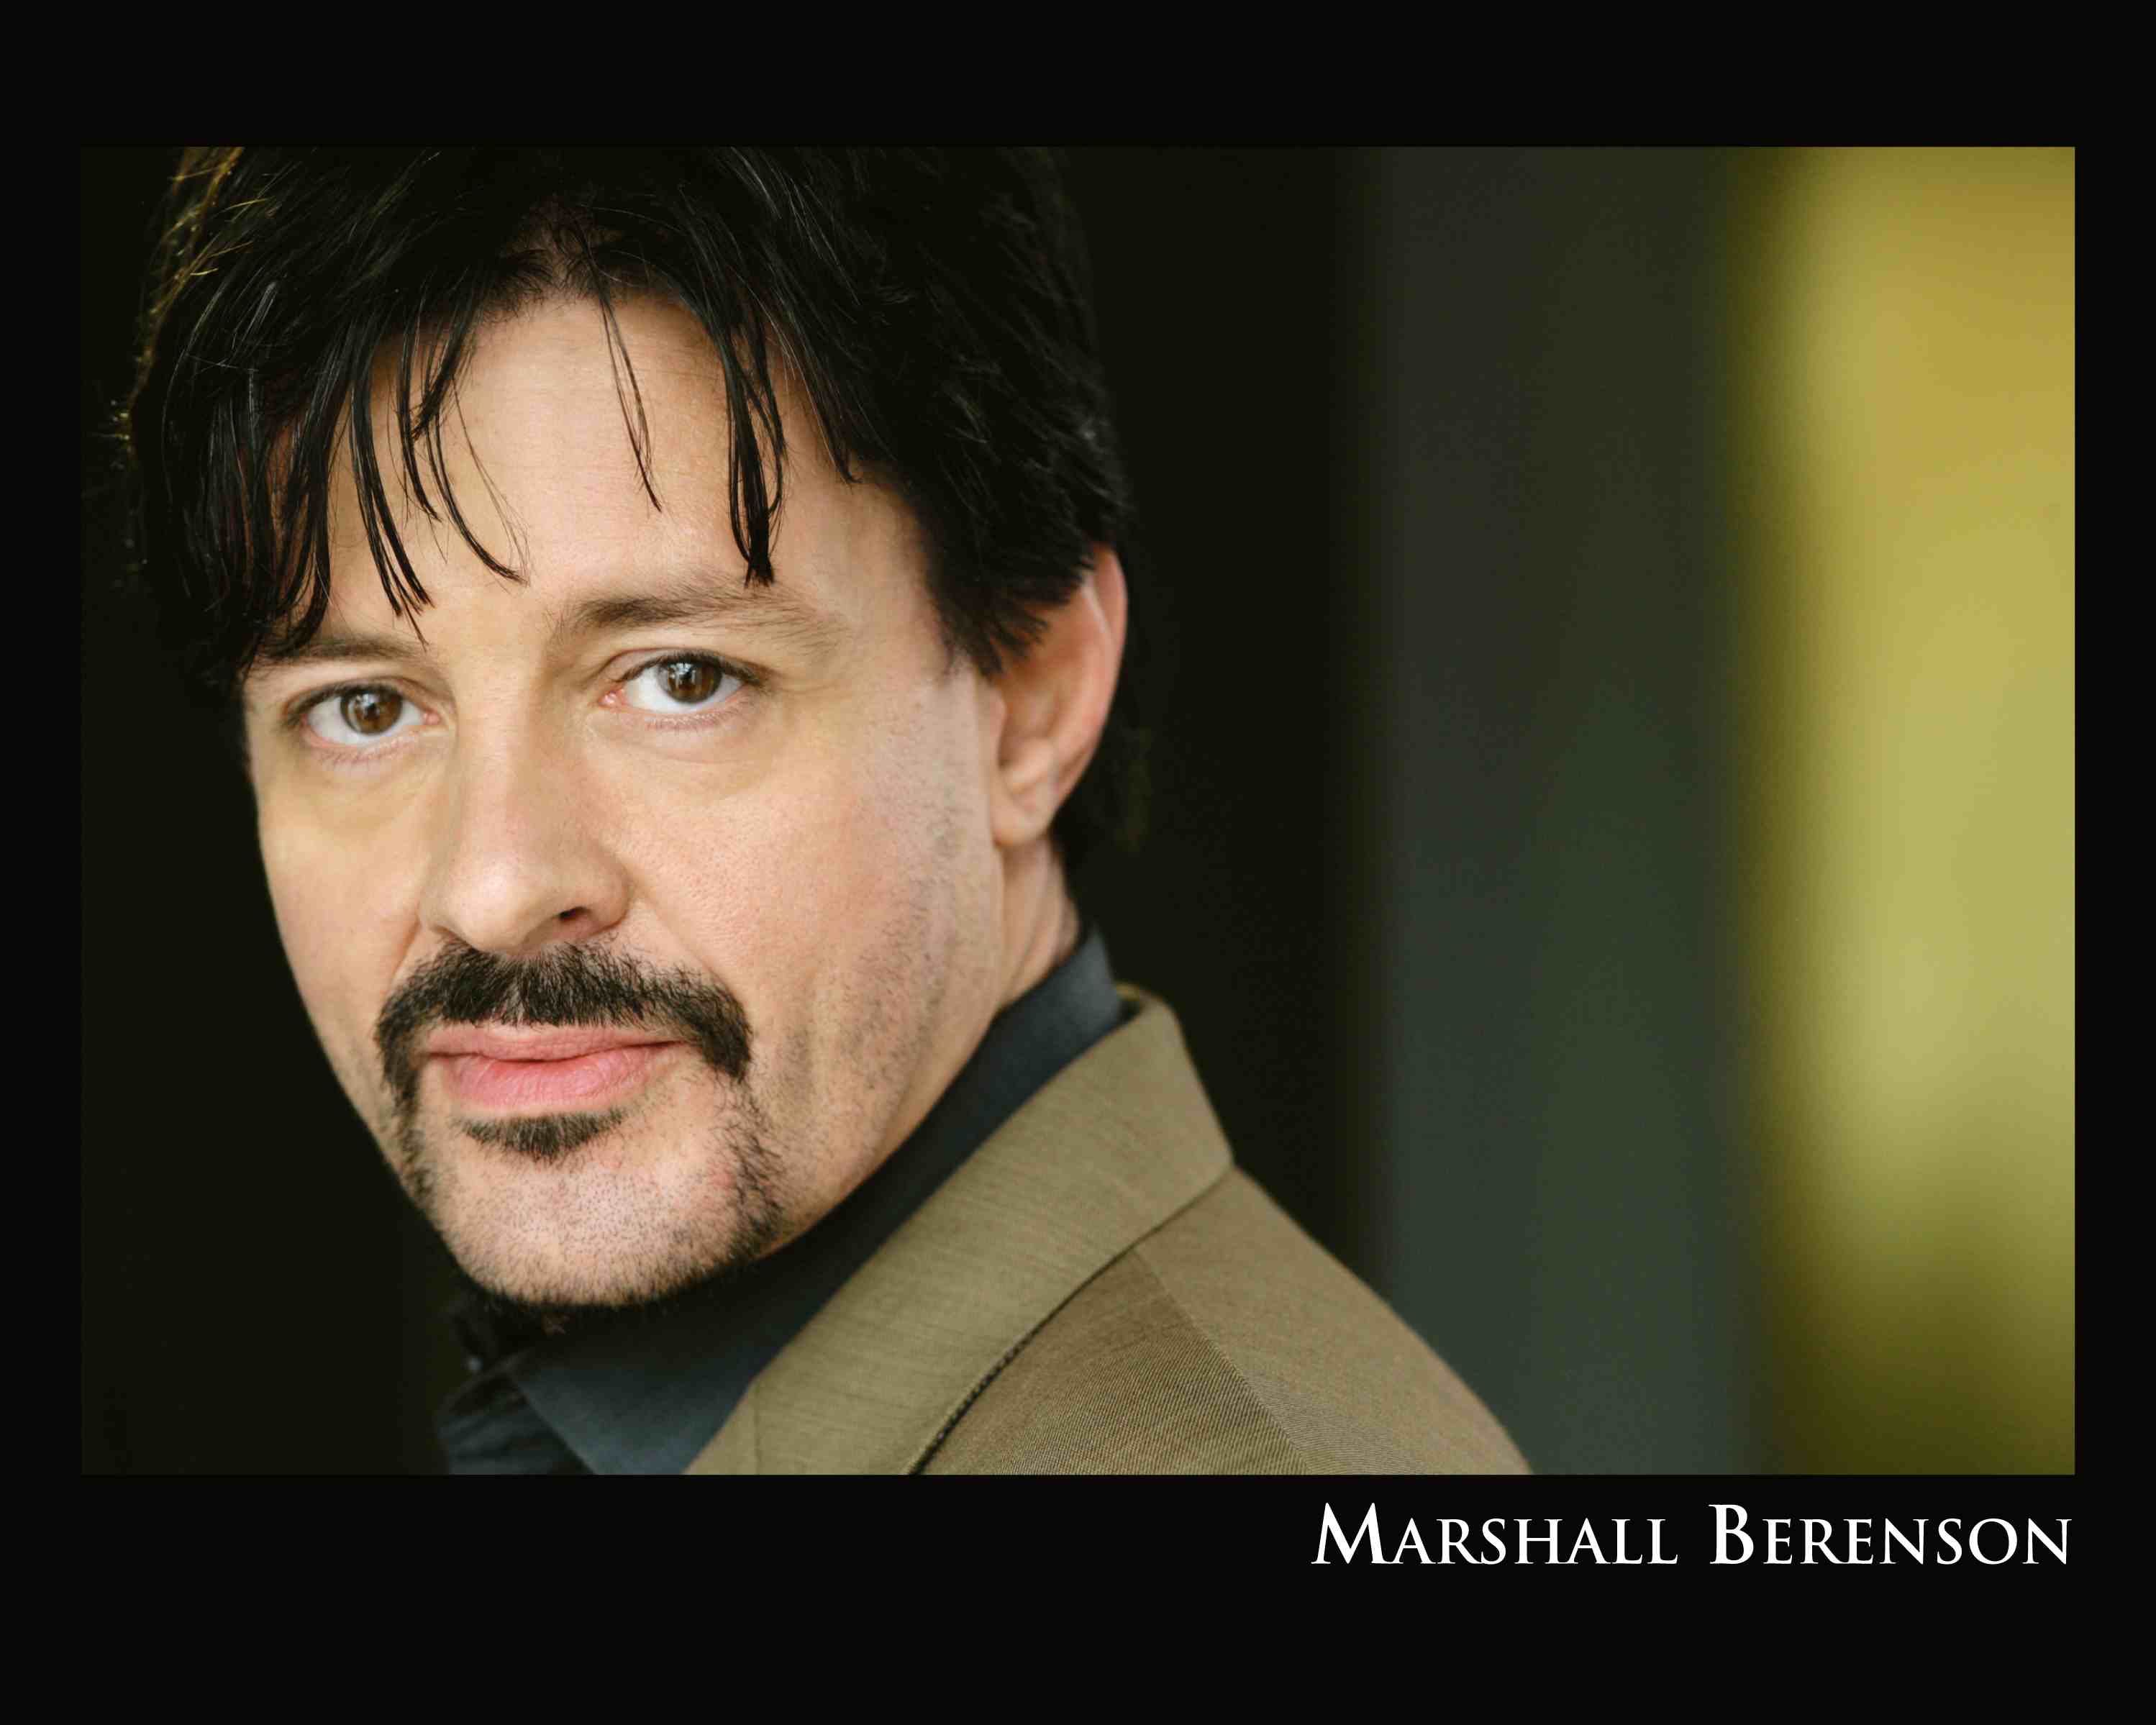 Marshall Berenson